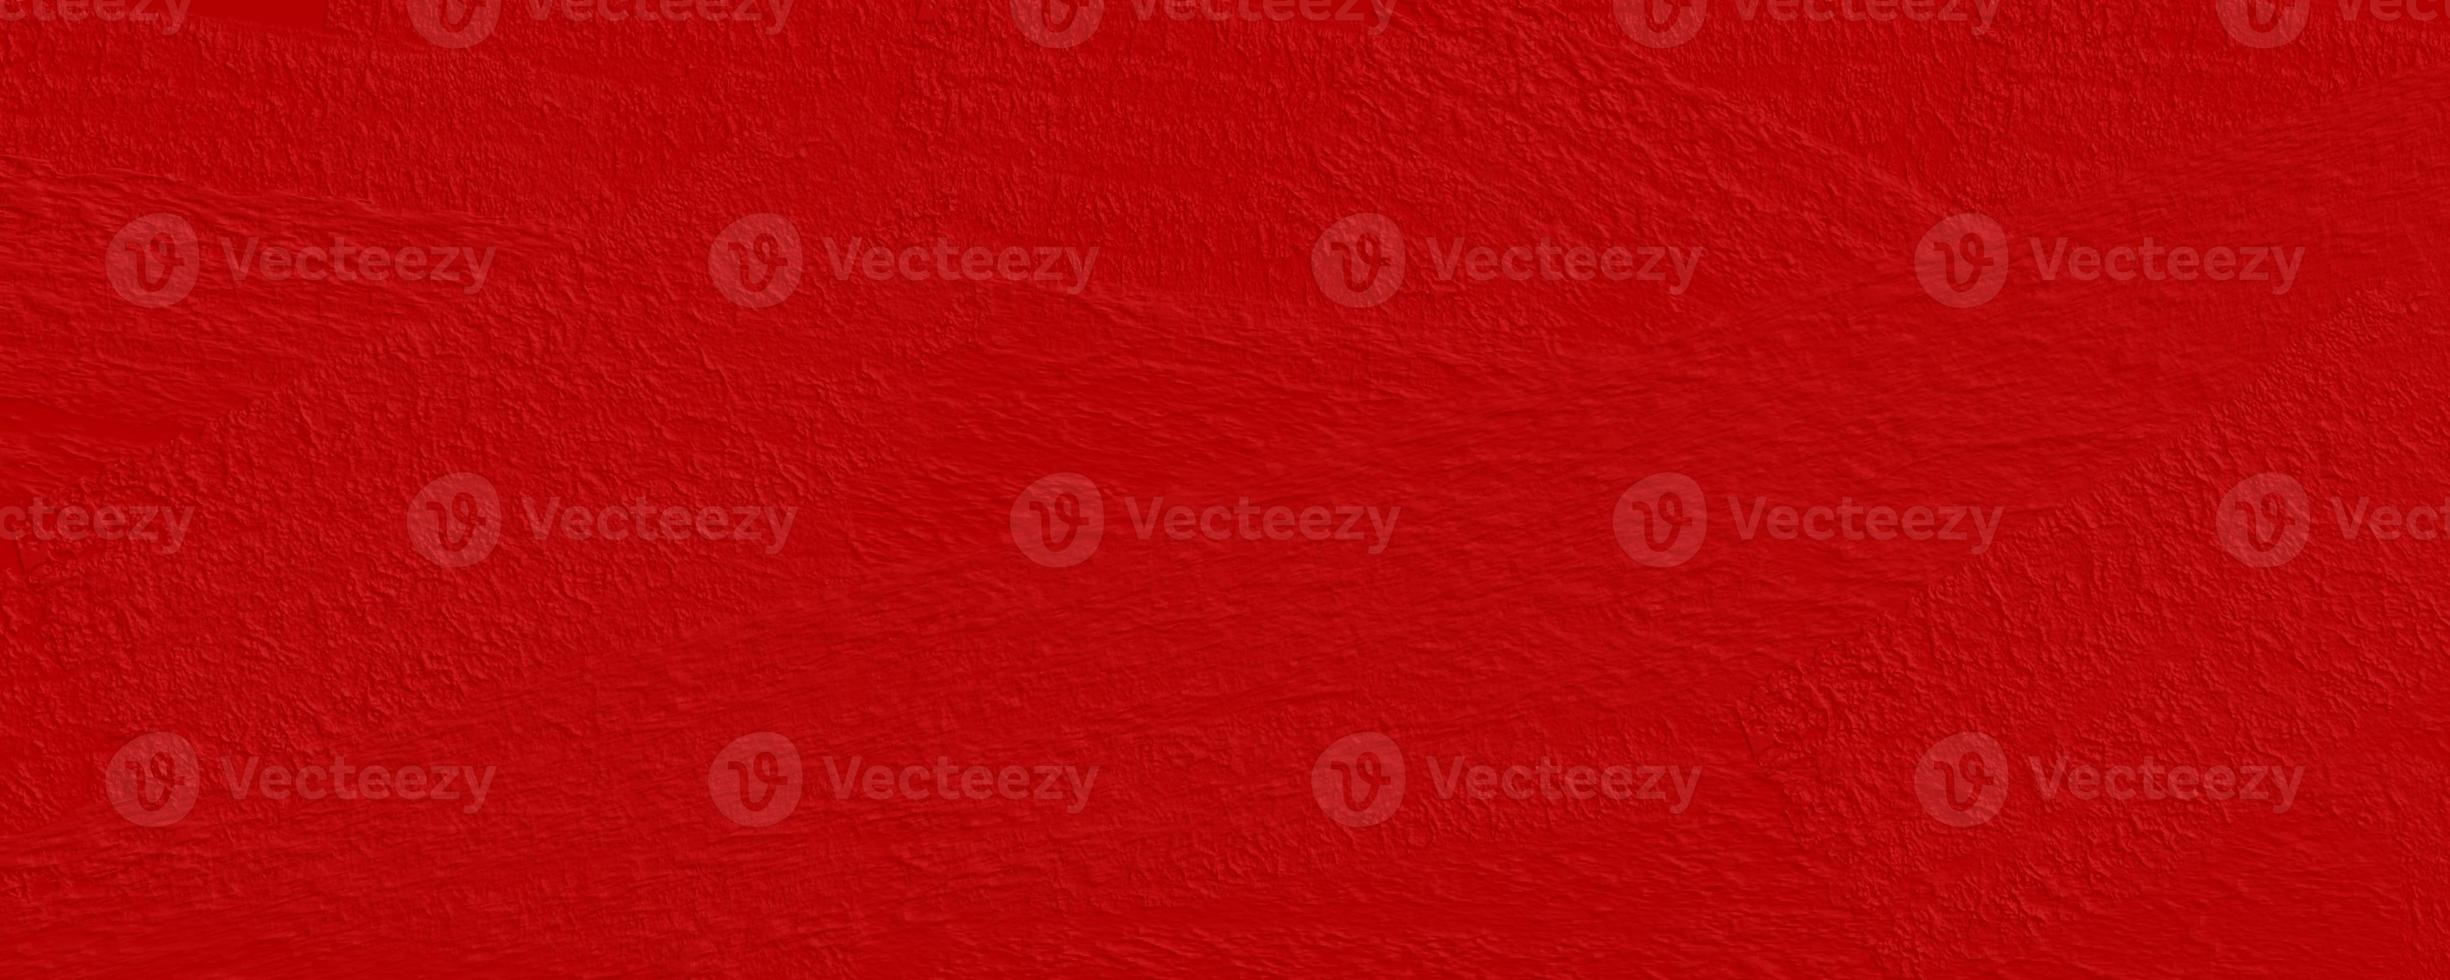 Tapetenbürstenschmerz rau für abstrakten Hintergrund, Logohintergrund, rote Farbe foto